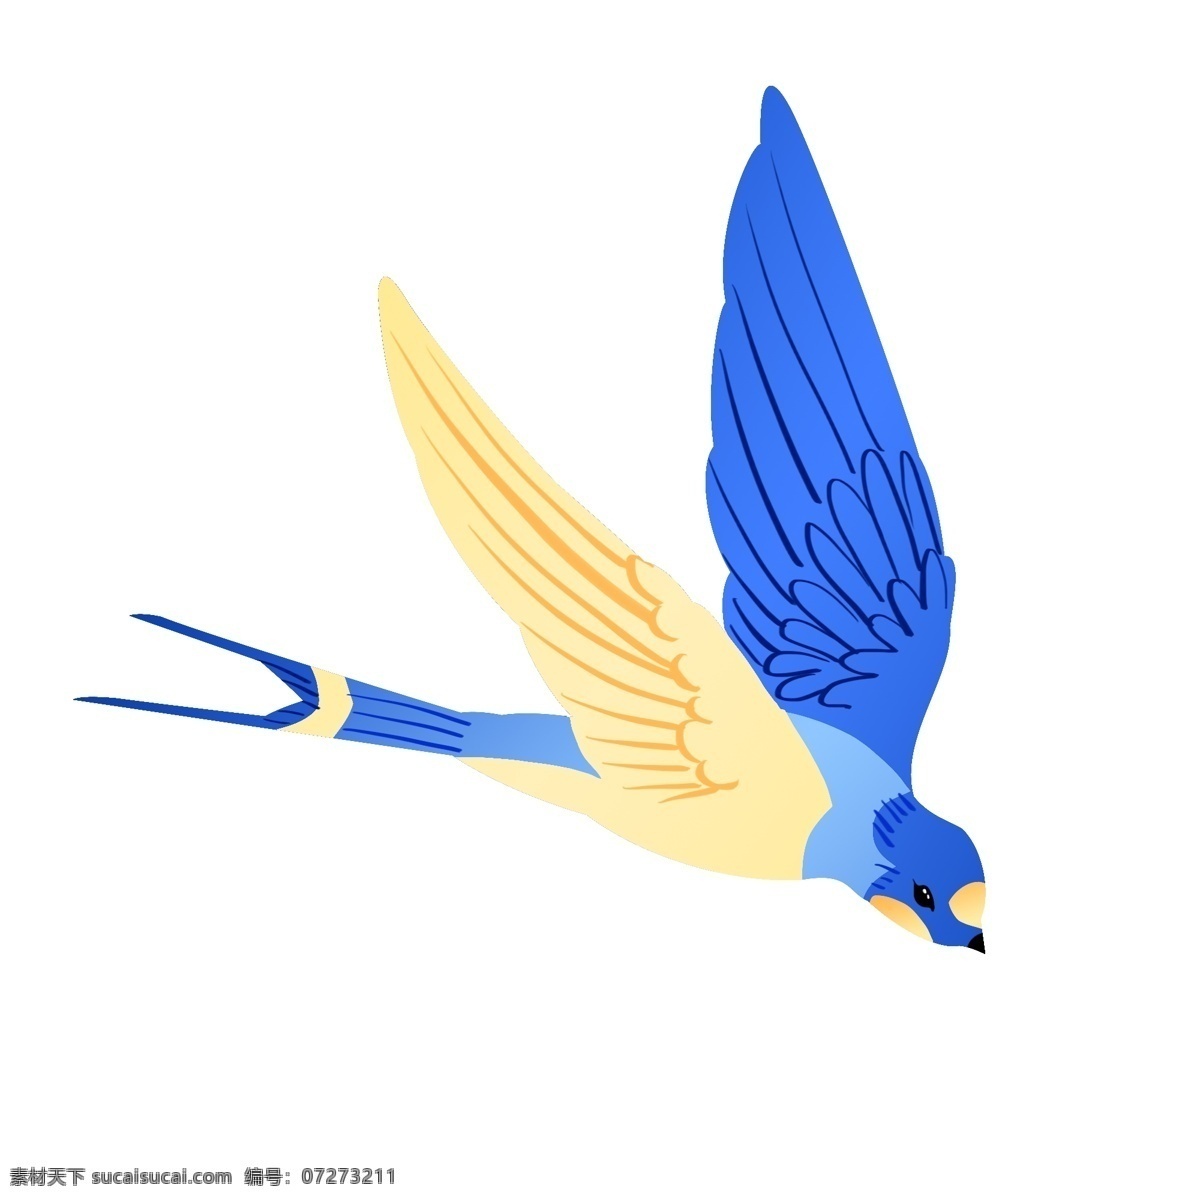 蓝色 向下 飞 燕子 插画 黄色翅膀 蓝色翅膀 可爱的燕子 春天 蓝色燕子插画 向下飞的燕子 向南飞的燕子